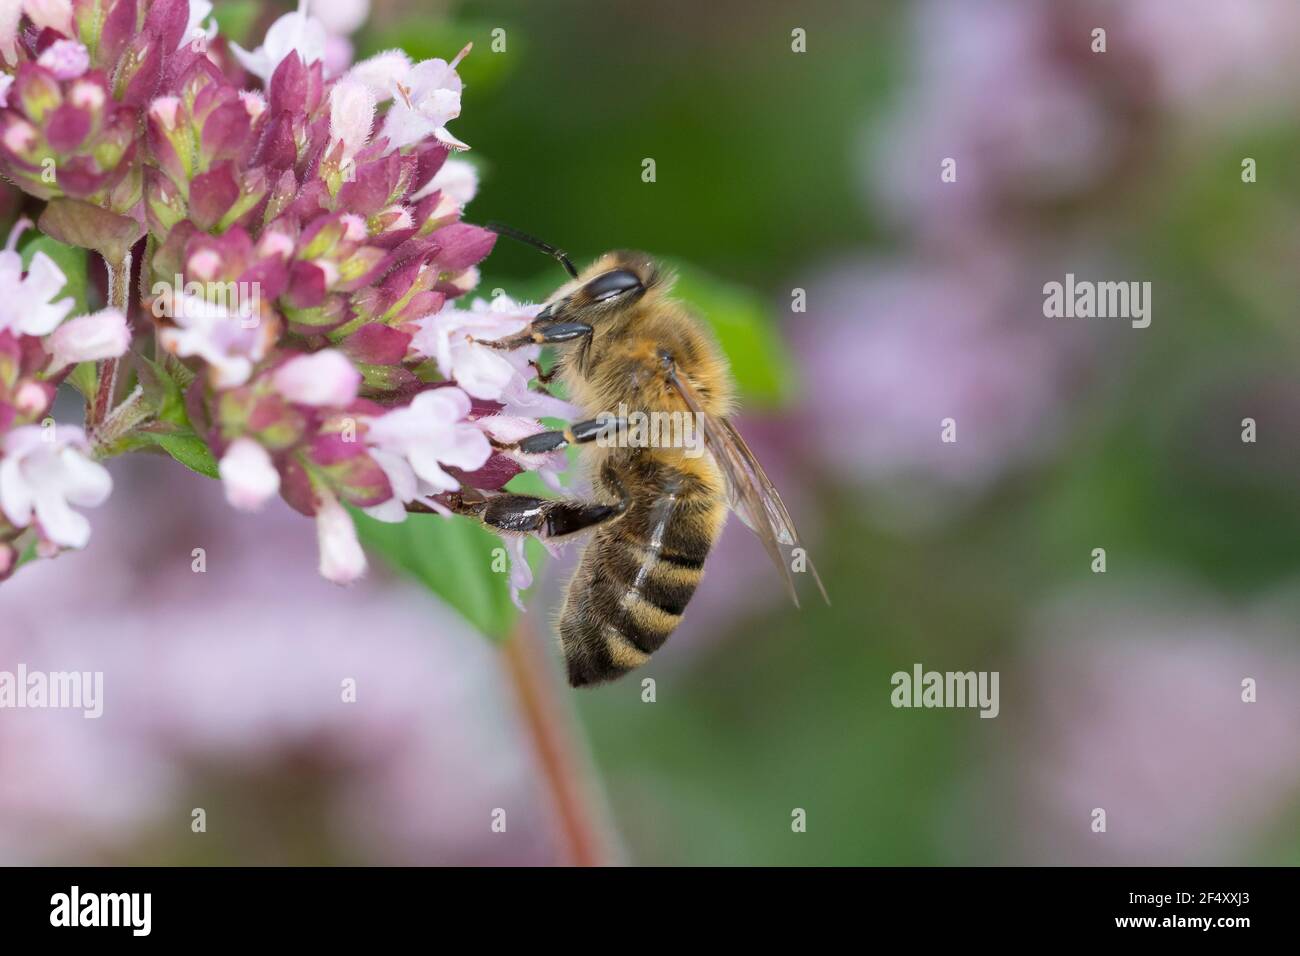 Honigbiene, Honig-Biene, Europäische Honigbiene, Westliche Honigbiene, Biene, Bienen, Apis mellifera, Apis mellifica, Blütenbesuch auf Wilder Dost, Or Stock Photo